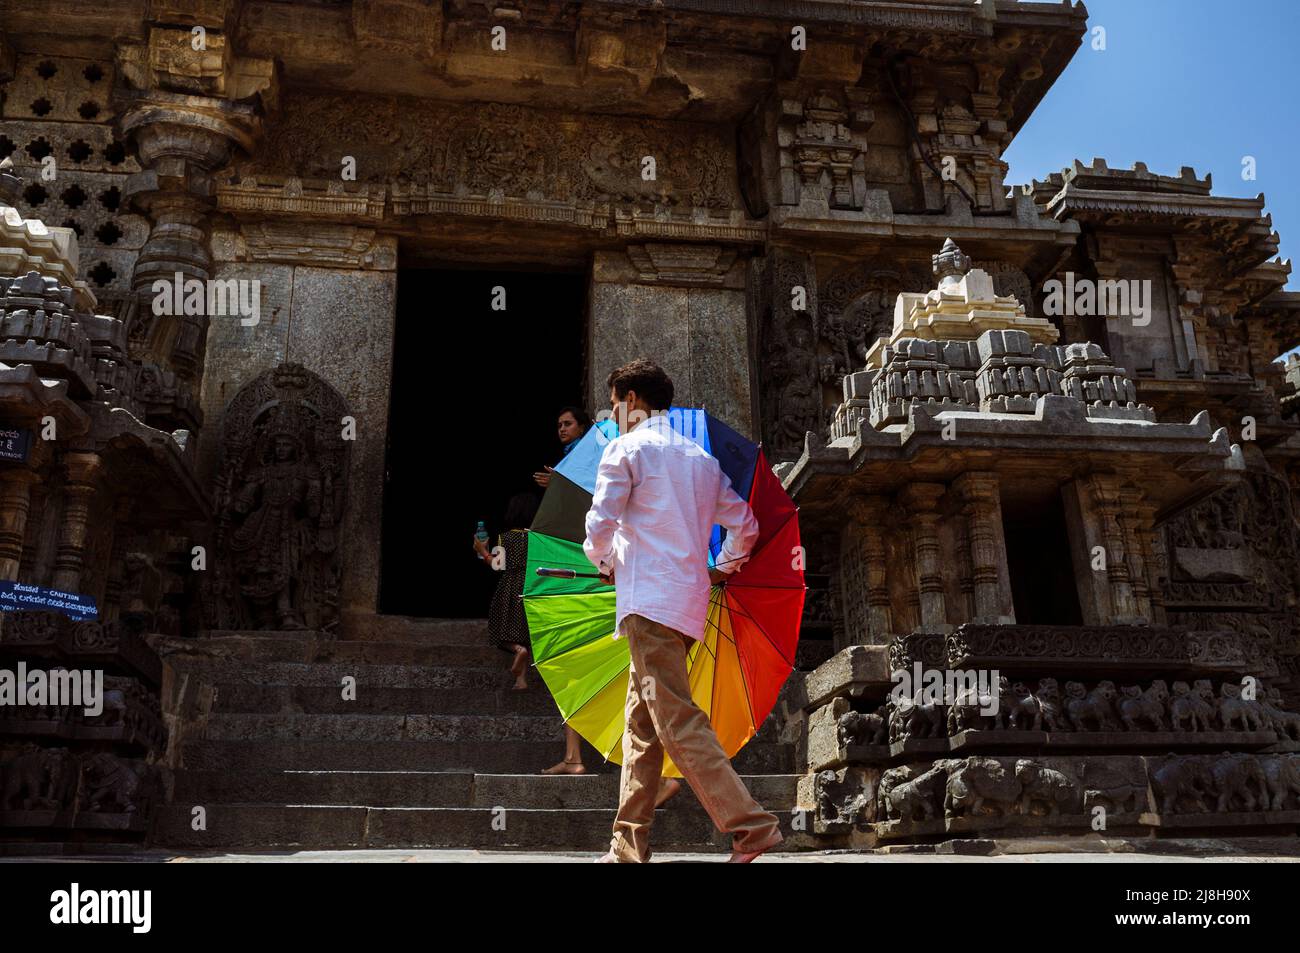 Halebid, Karnataka, India : Un hombre que sostiene un colorido arco iris sol-sombra y su familia visitan el templo Hoysaleswara del siglo 12th Foto de stock